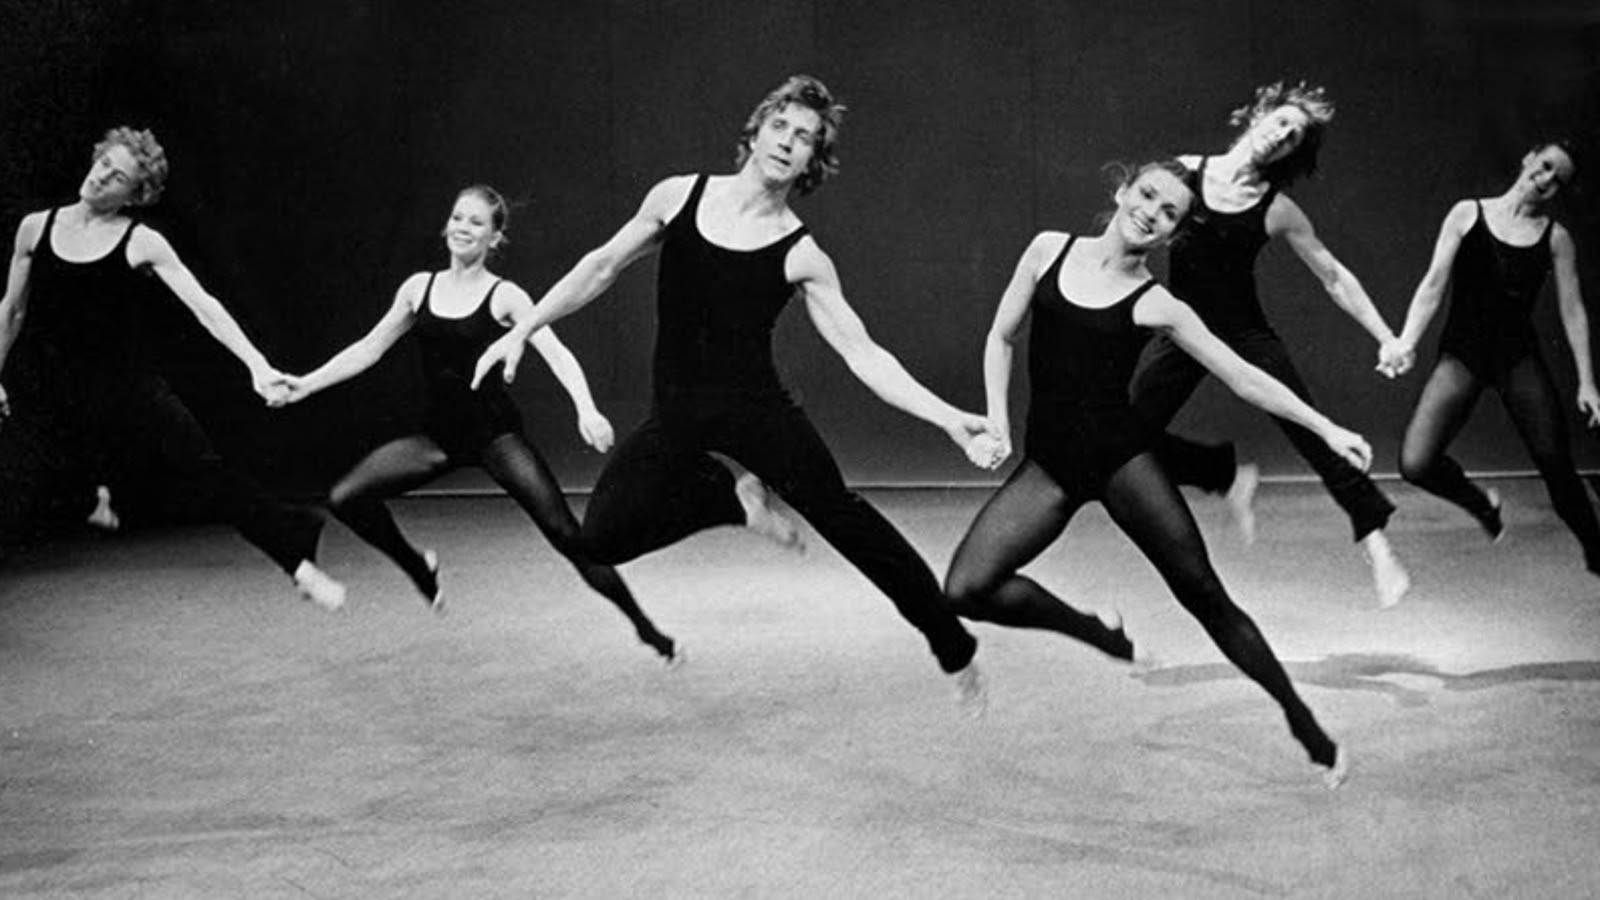 Kuvassa on kuusi tanssijaa ilmahypyssä, jossa he ovat jalat vinosti ylhäällä ja kaksittain käsi kädessä. Kuva on musta-valkoinen.